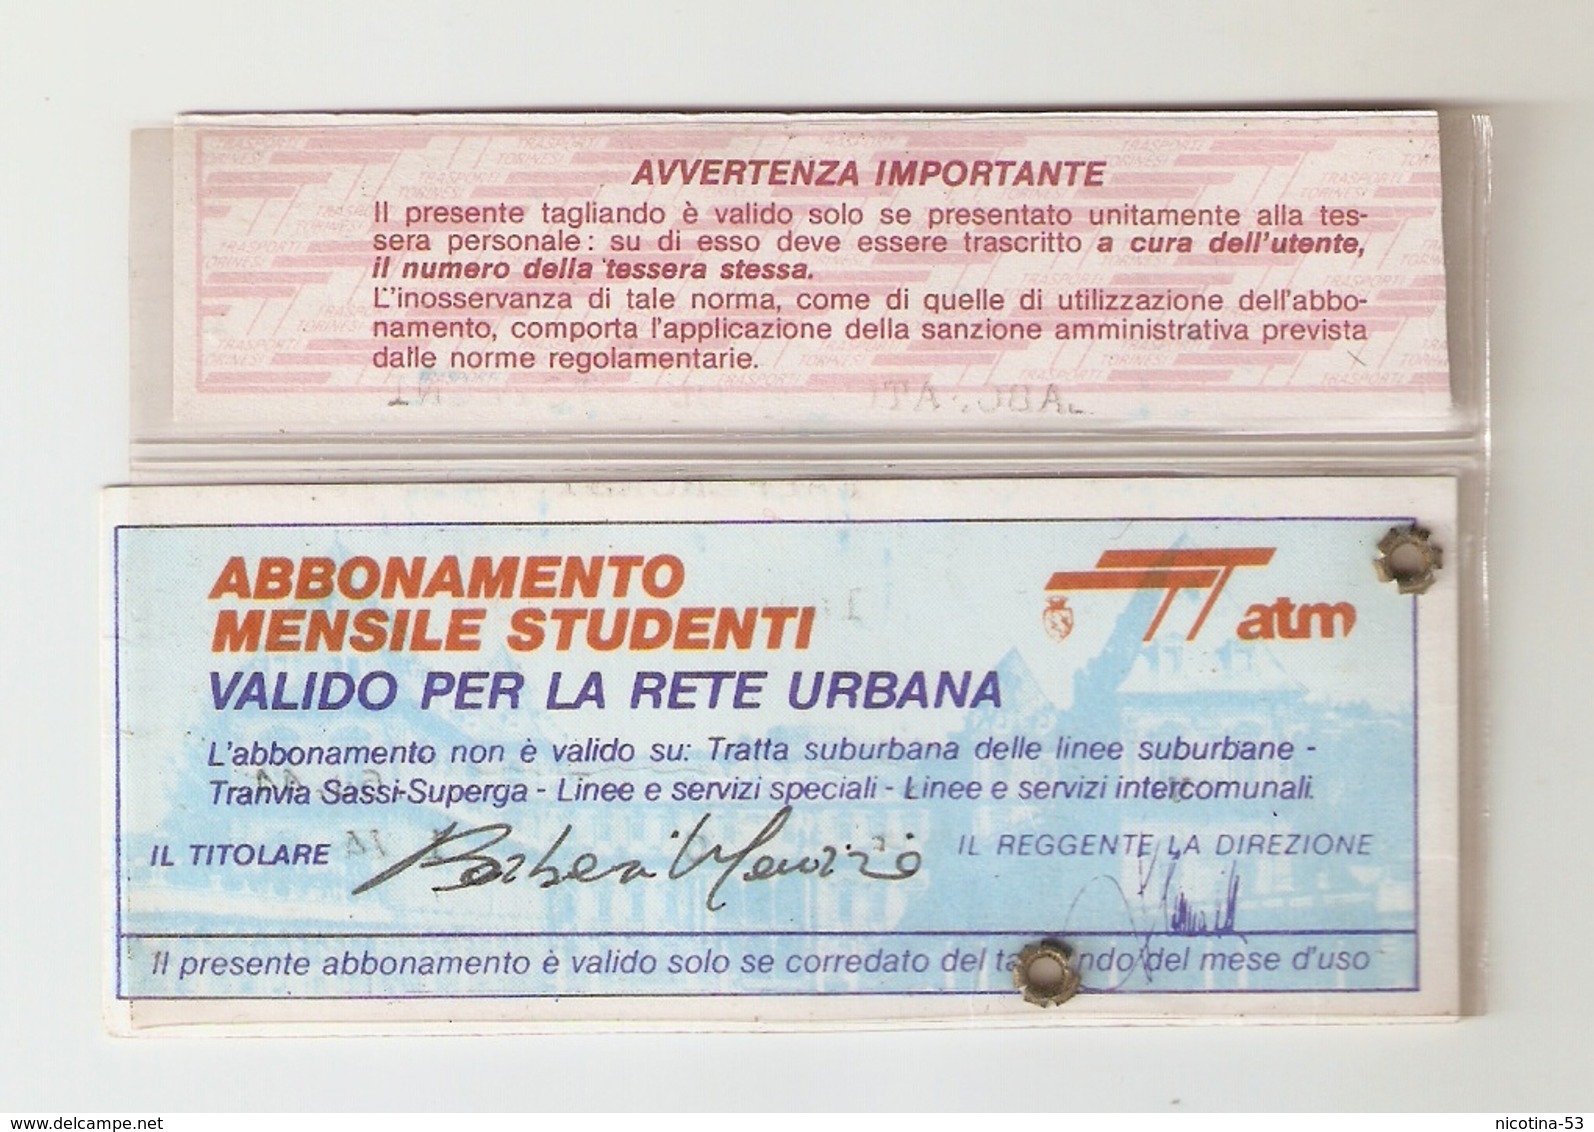 BIGL--00058-- ABBONAMENTO RETE URBANA TORINO-STUDENTI PENSIONATI- ANNO 1984/85 - Europa